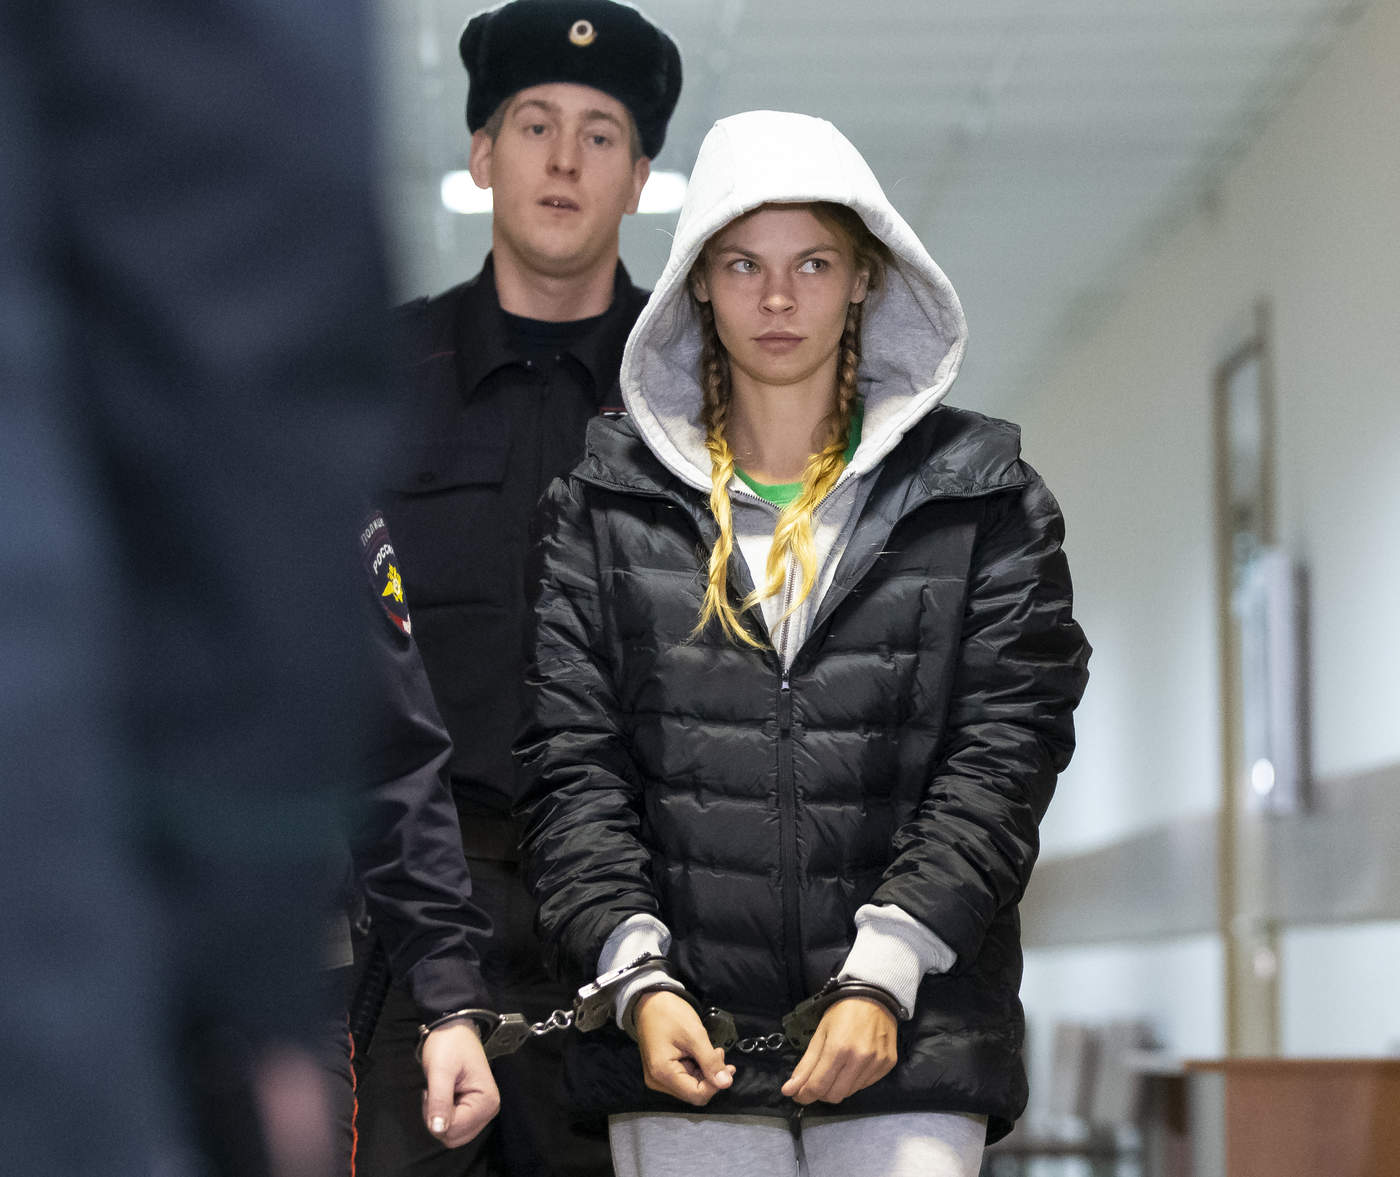 La juez decidió archivar el expediente por el que Ribka estuvo en prisión durante 72 horas por supuestamente inducir a la prostitución, delito que se castiga en Rusia con seis años de cárcel. (ARCHIVO)